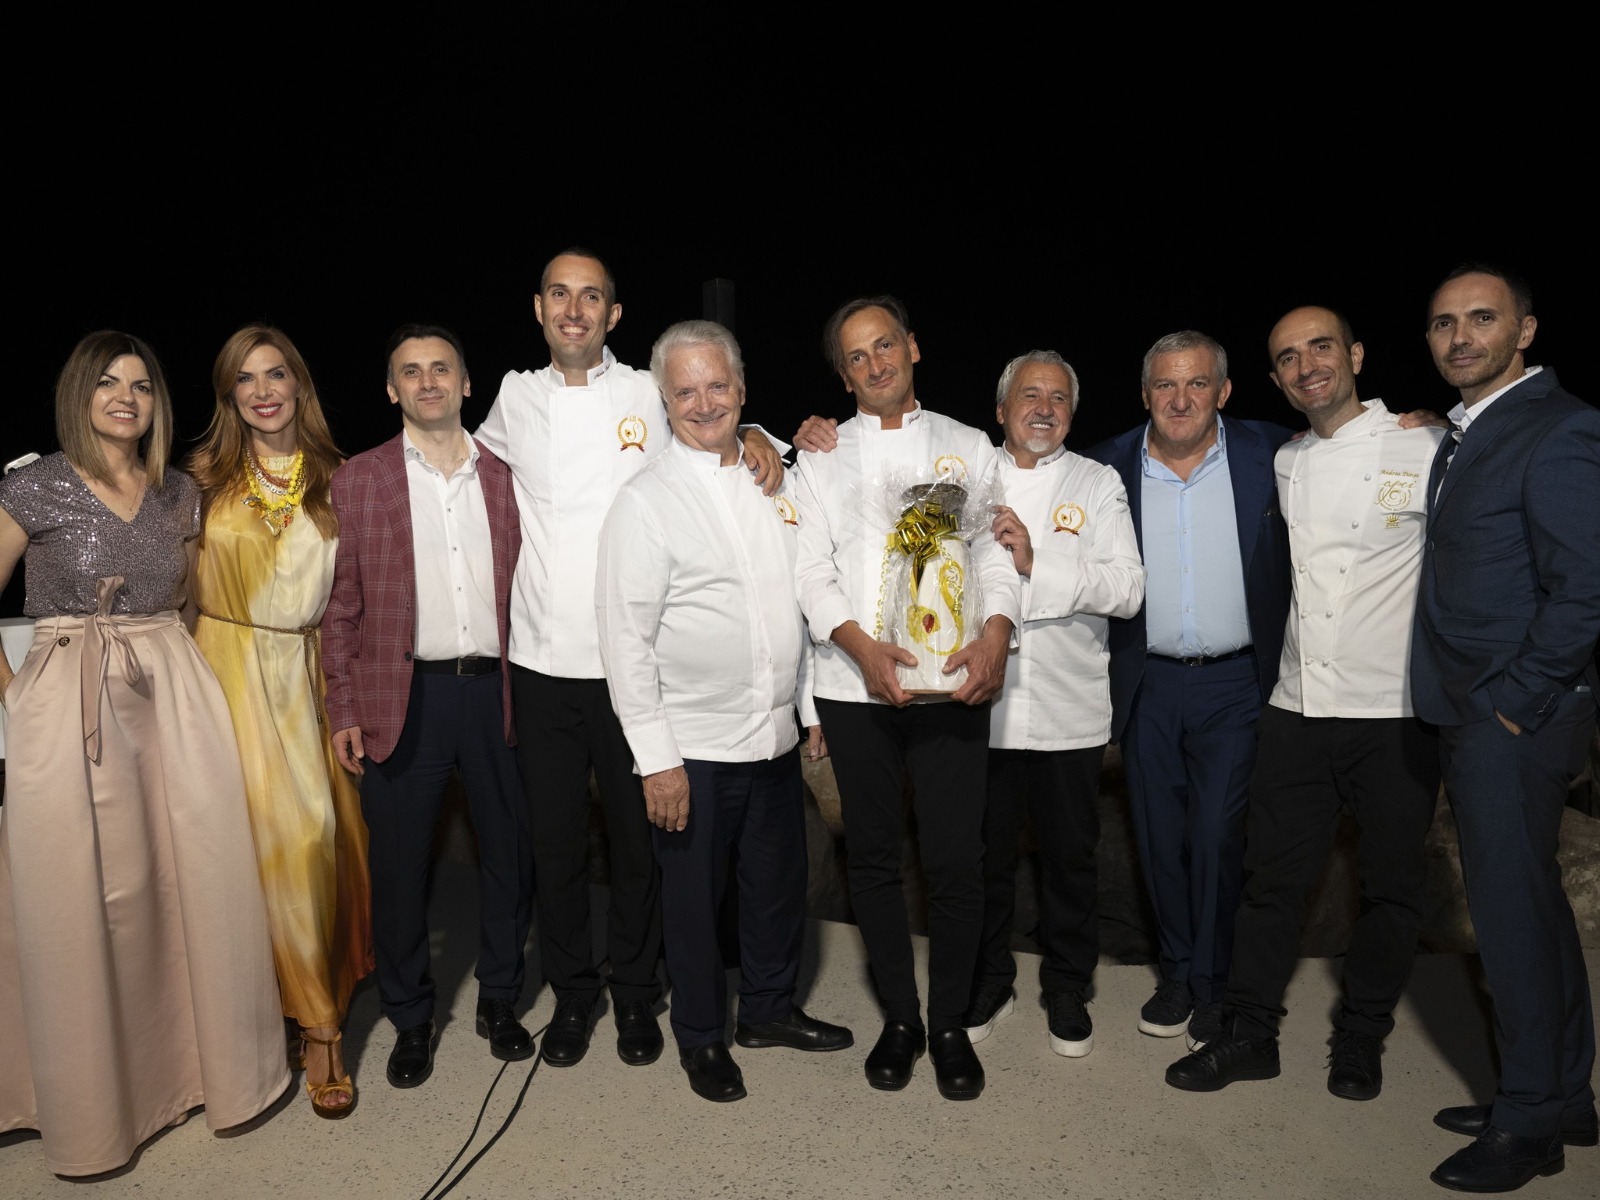 Il pasticcere Giuseppe Manilia trionfa al Santarosa Pastry Cup